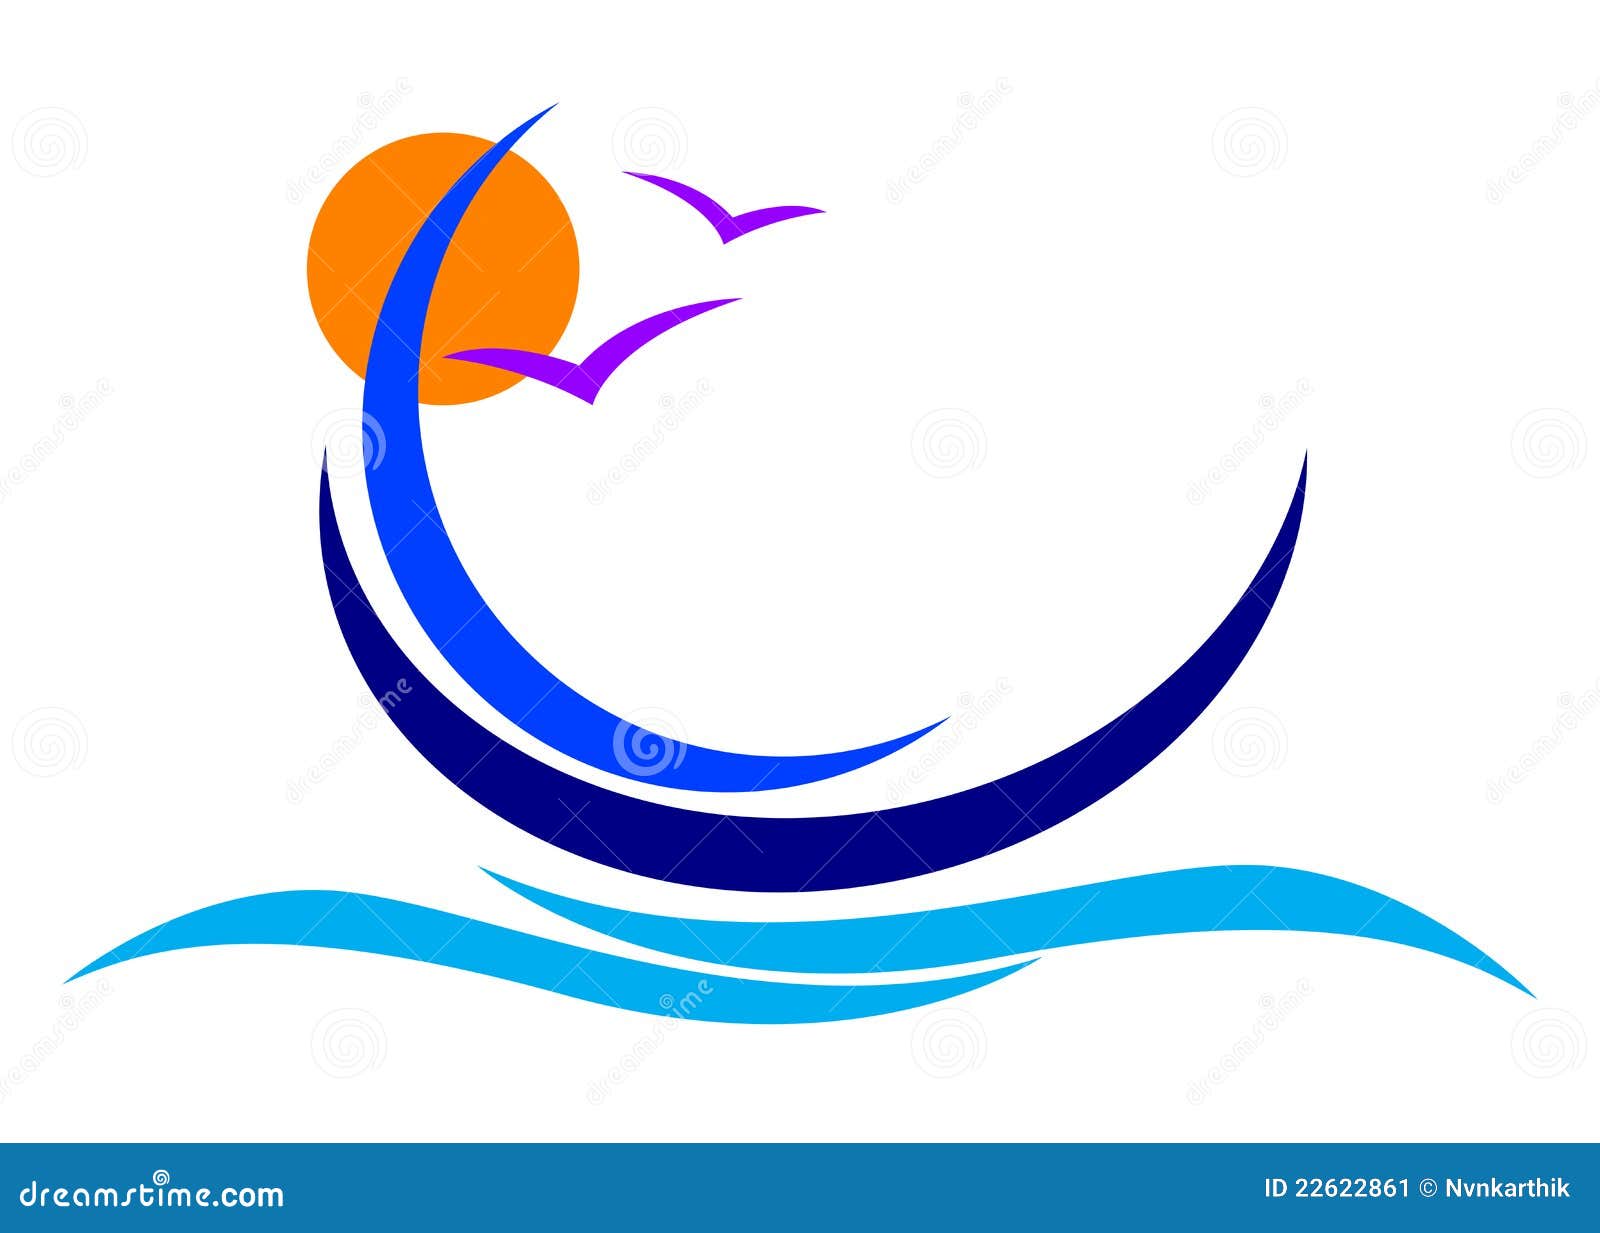 Boat logo stock vector. Illustration of ship, illustration 